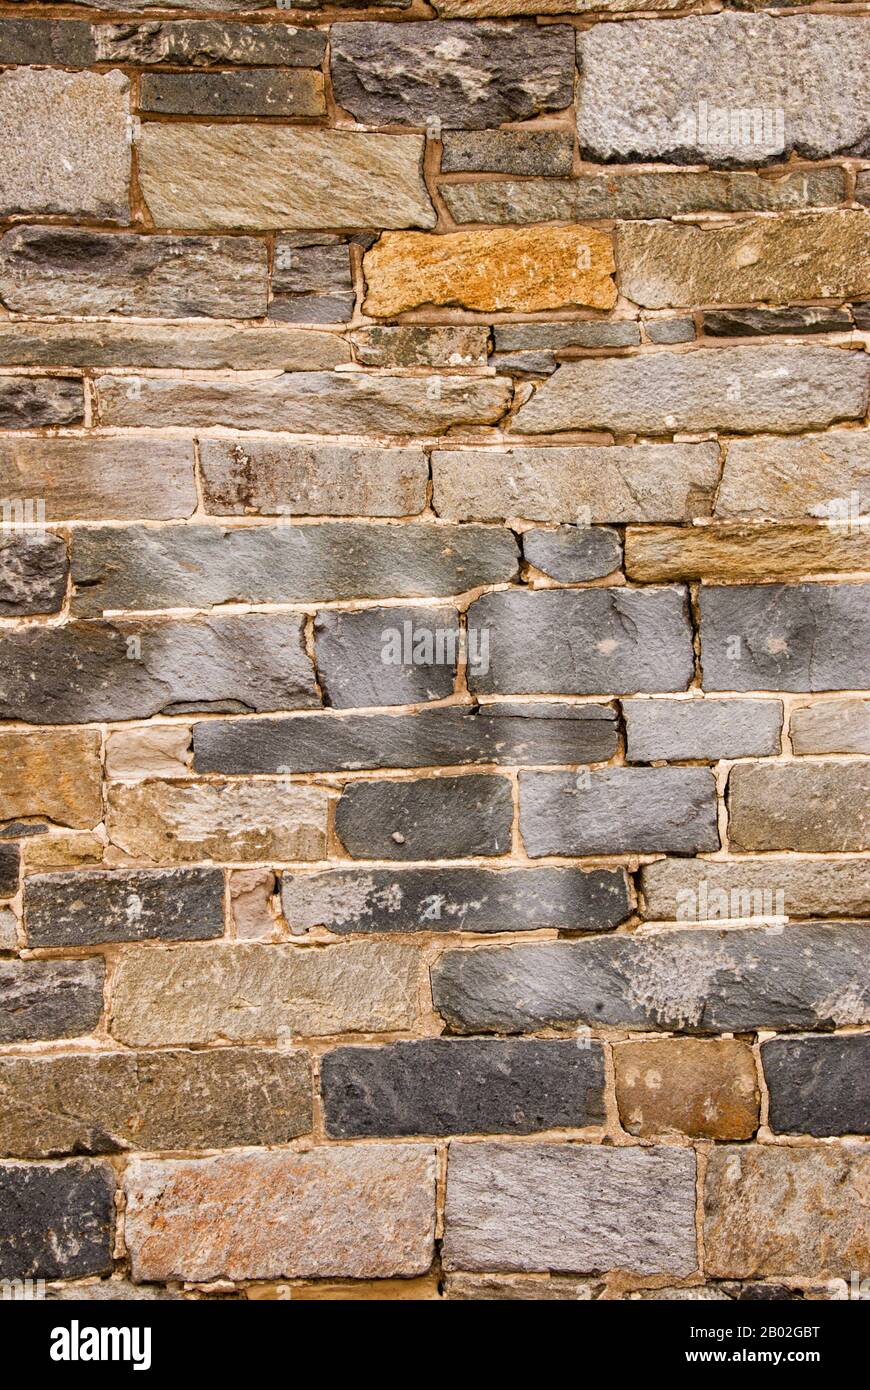 Les roches et les pierres grises et brunes de cet ancien mur sont tordues et inclinées dans toutes les directions. Il est plein de texture et d'intérêt visuel. Banque D'Images